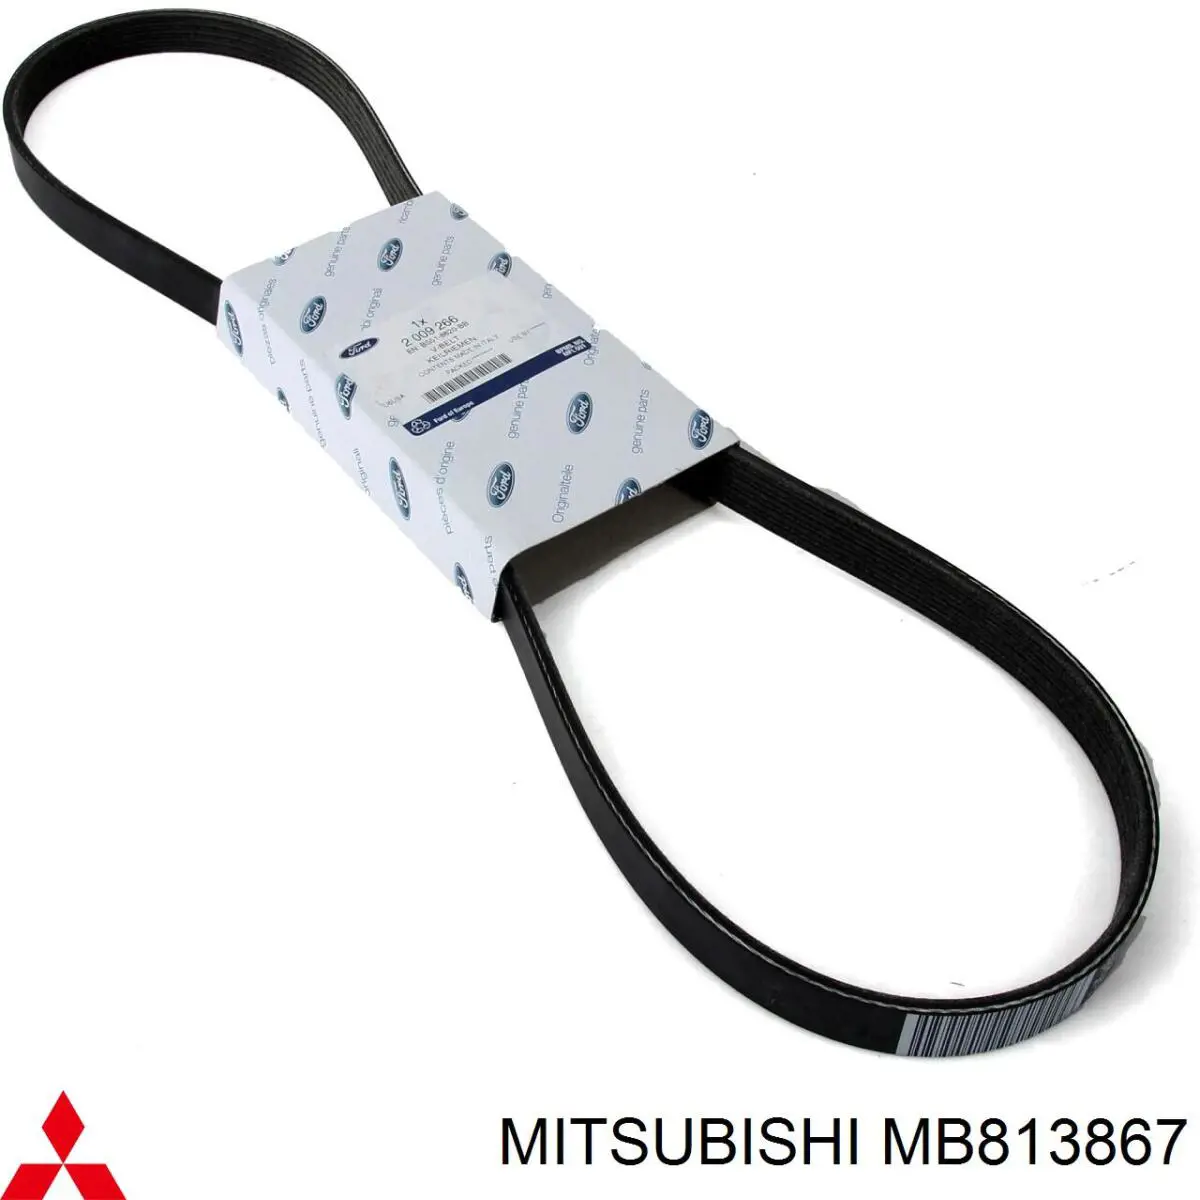 MB813867 Mitsubishi correa trapezoidal